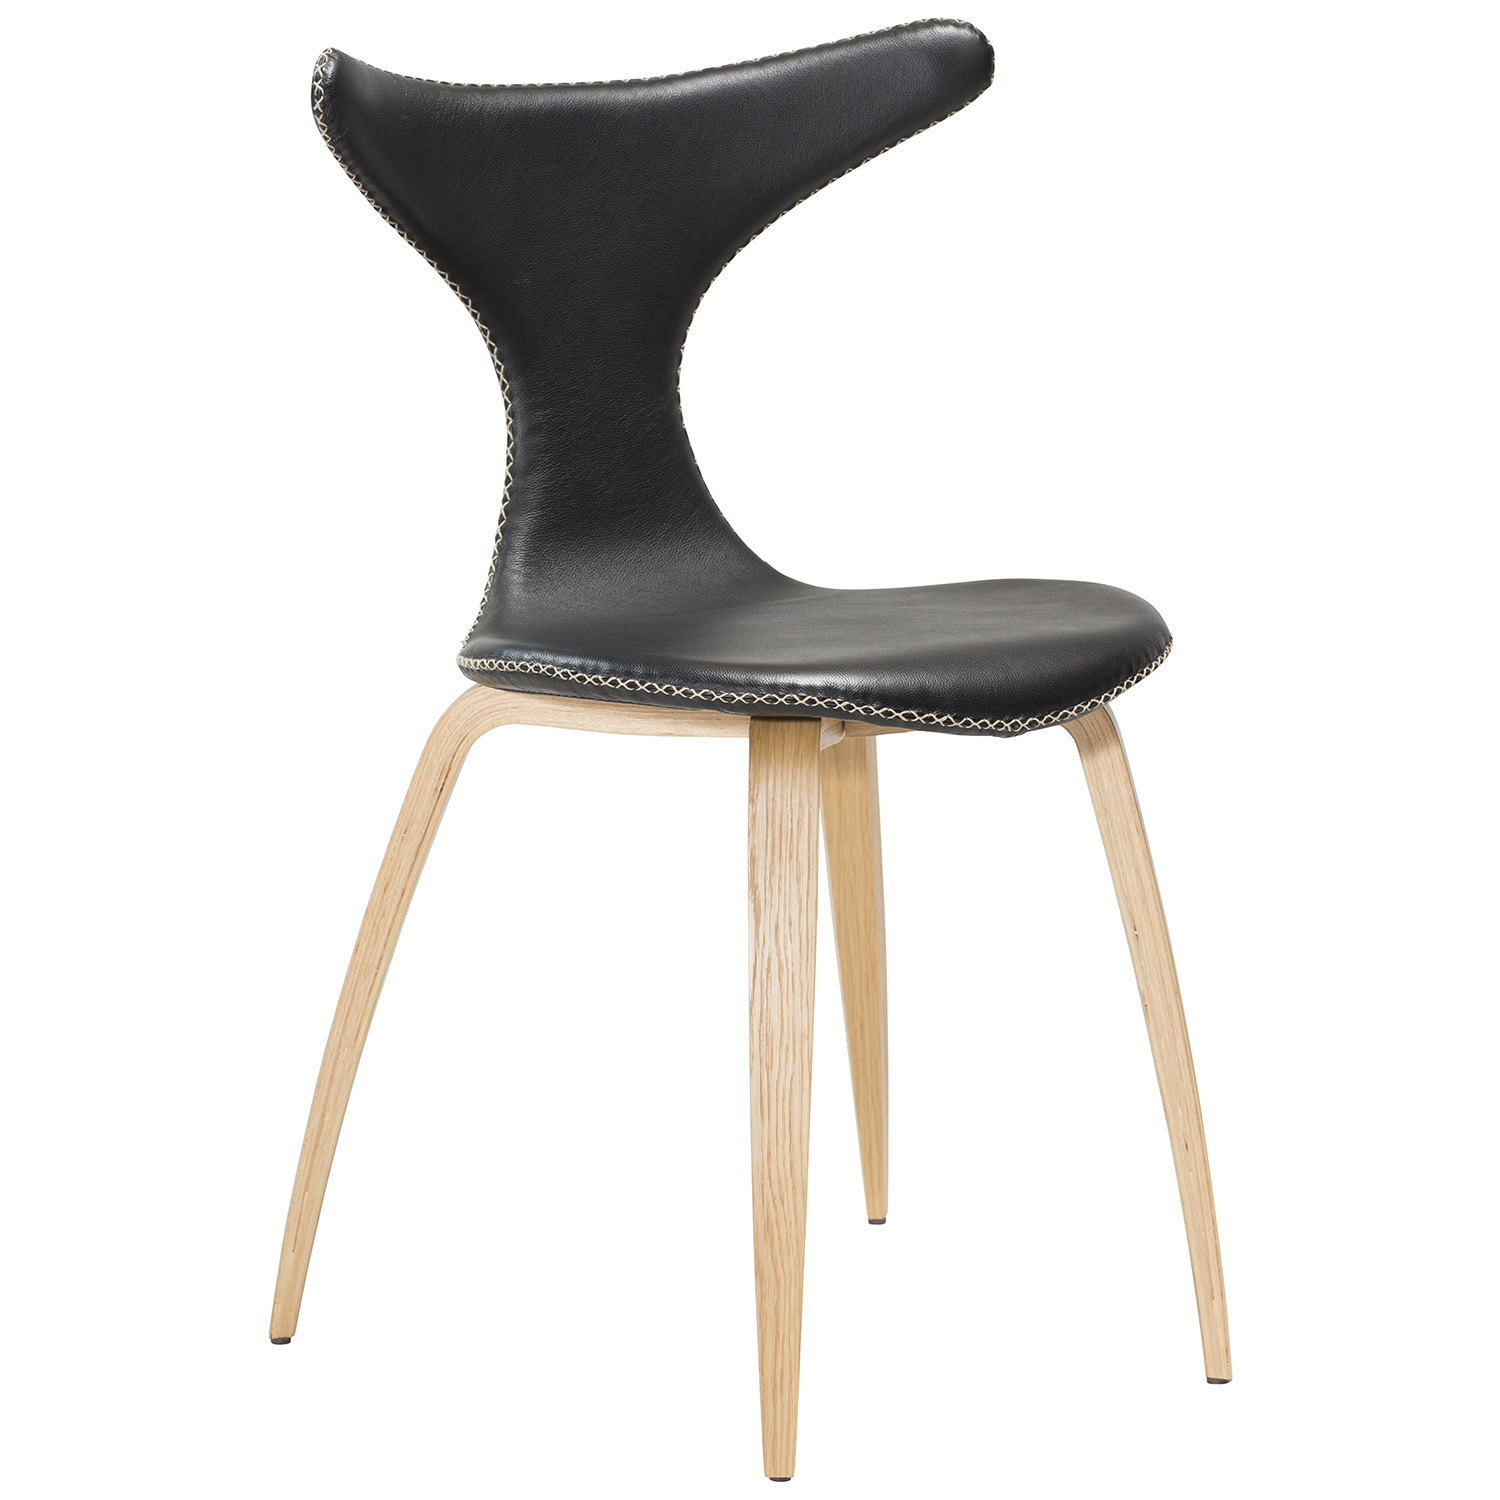 DAN-FORM Dolphin matbordsstol - svart läder och naturlig ek